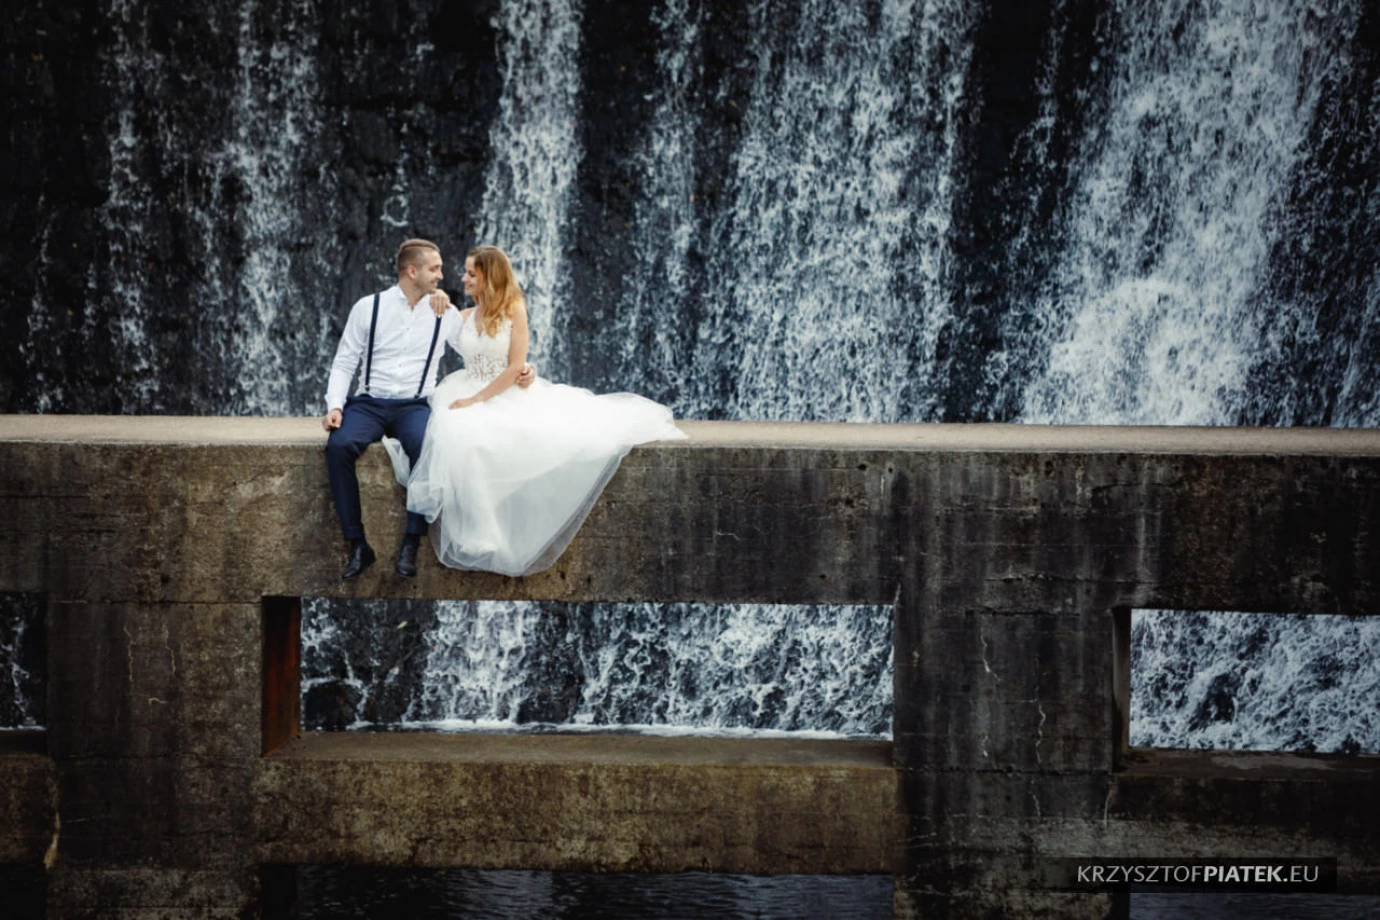 fotograf katowice krzysztof-piatek portfolio zdjecia slubne inspiracje wesele plener slubny sesja slubna